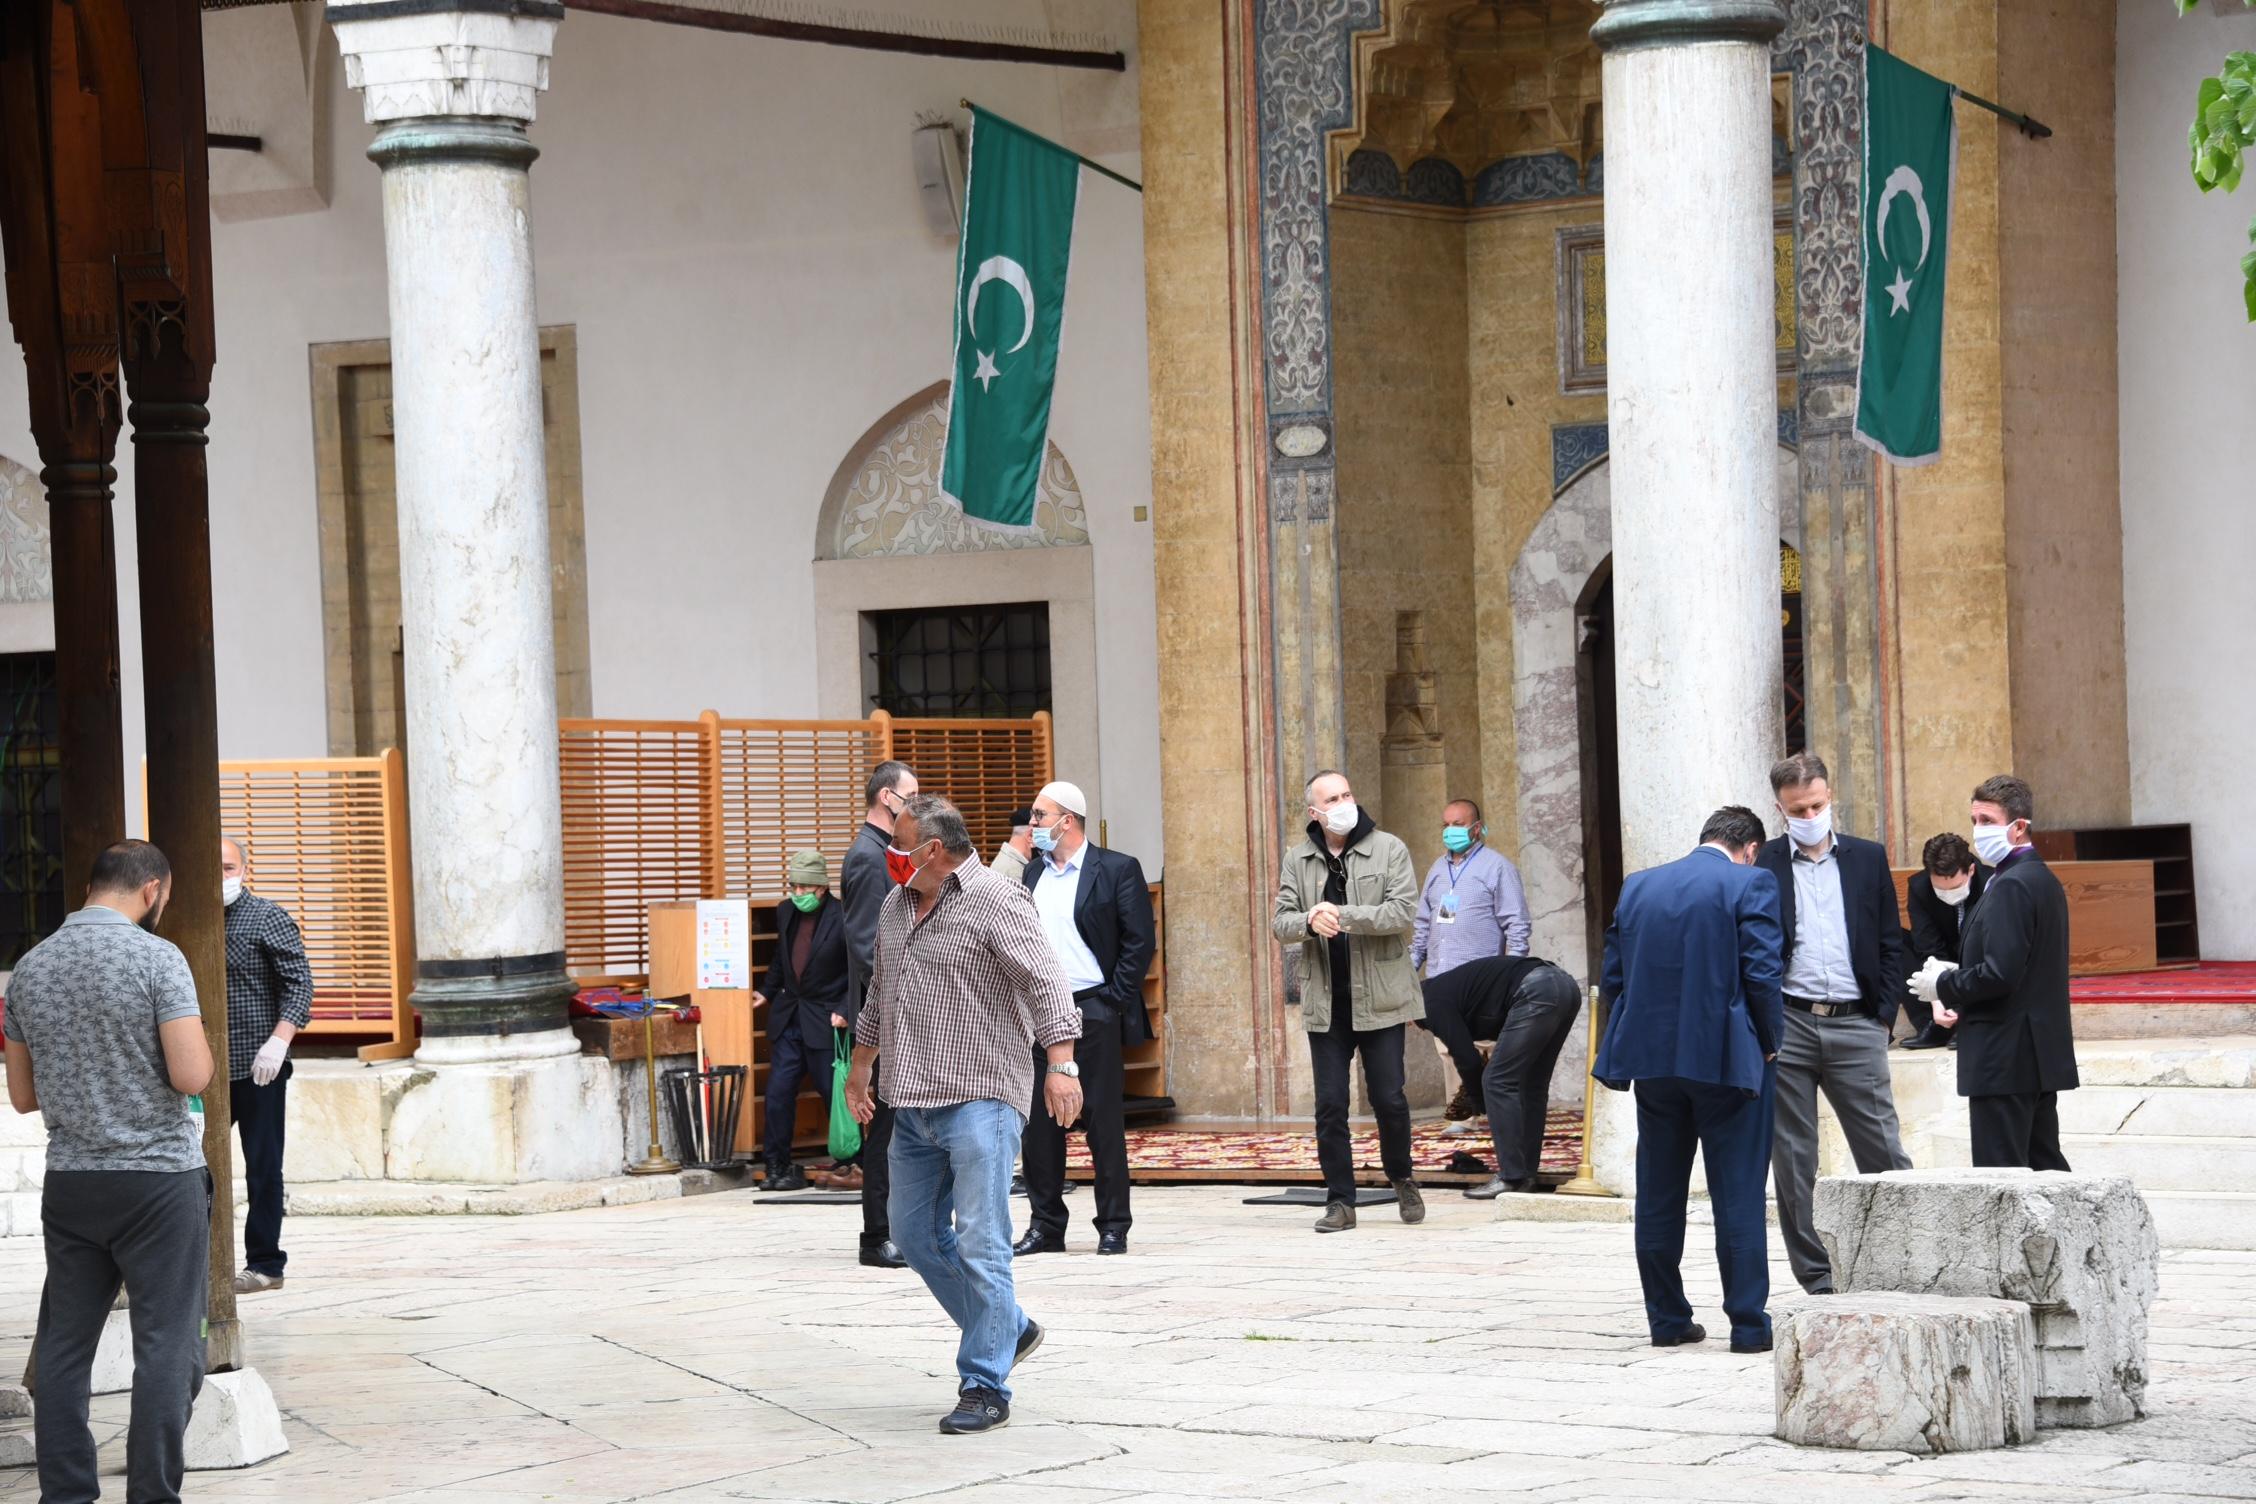 Prilikom dolaska i boravka u džamijskim prostorima obavezni su nošenje maske - Avaz